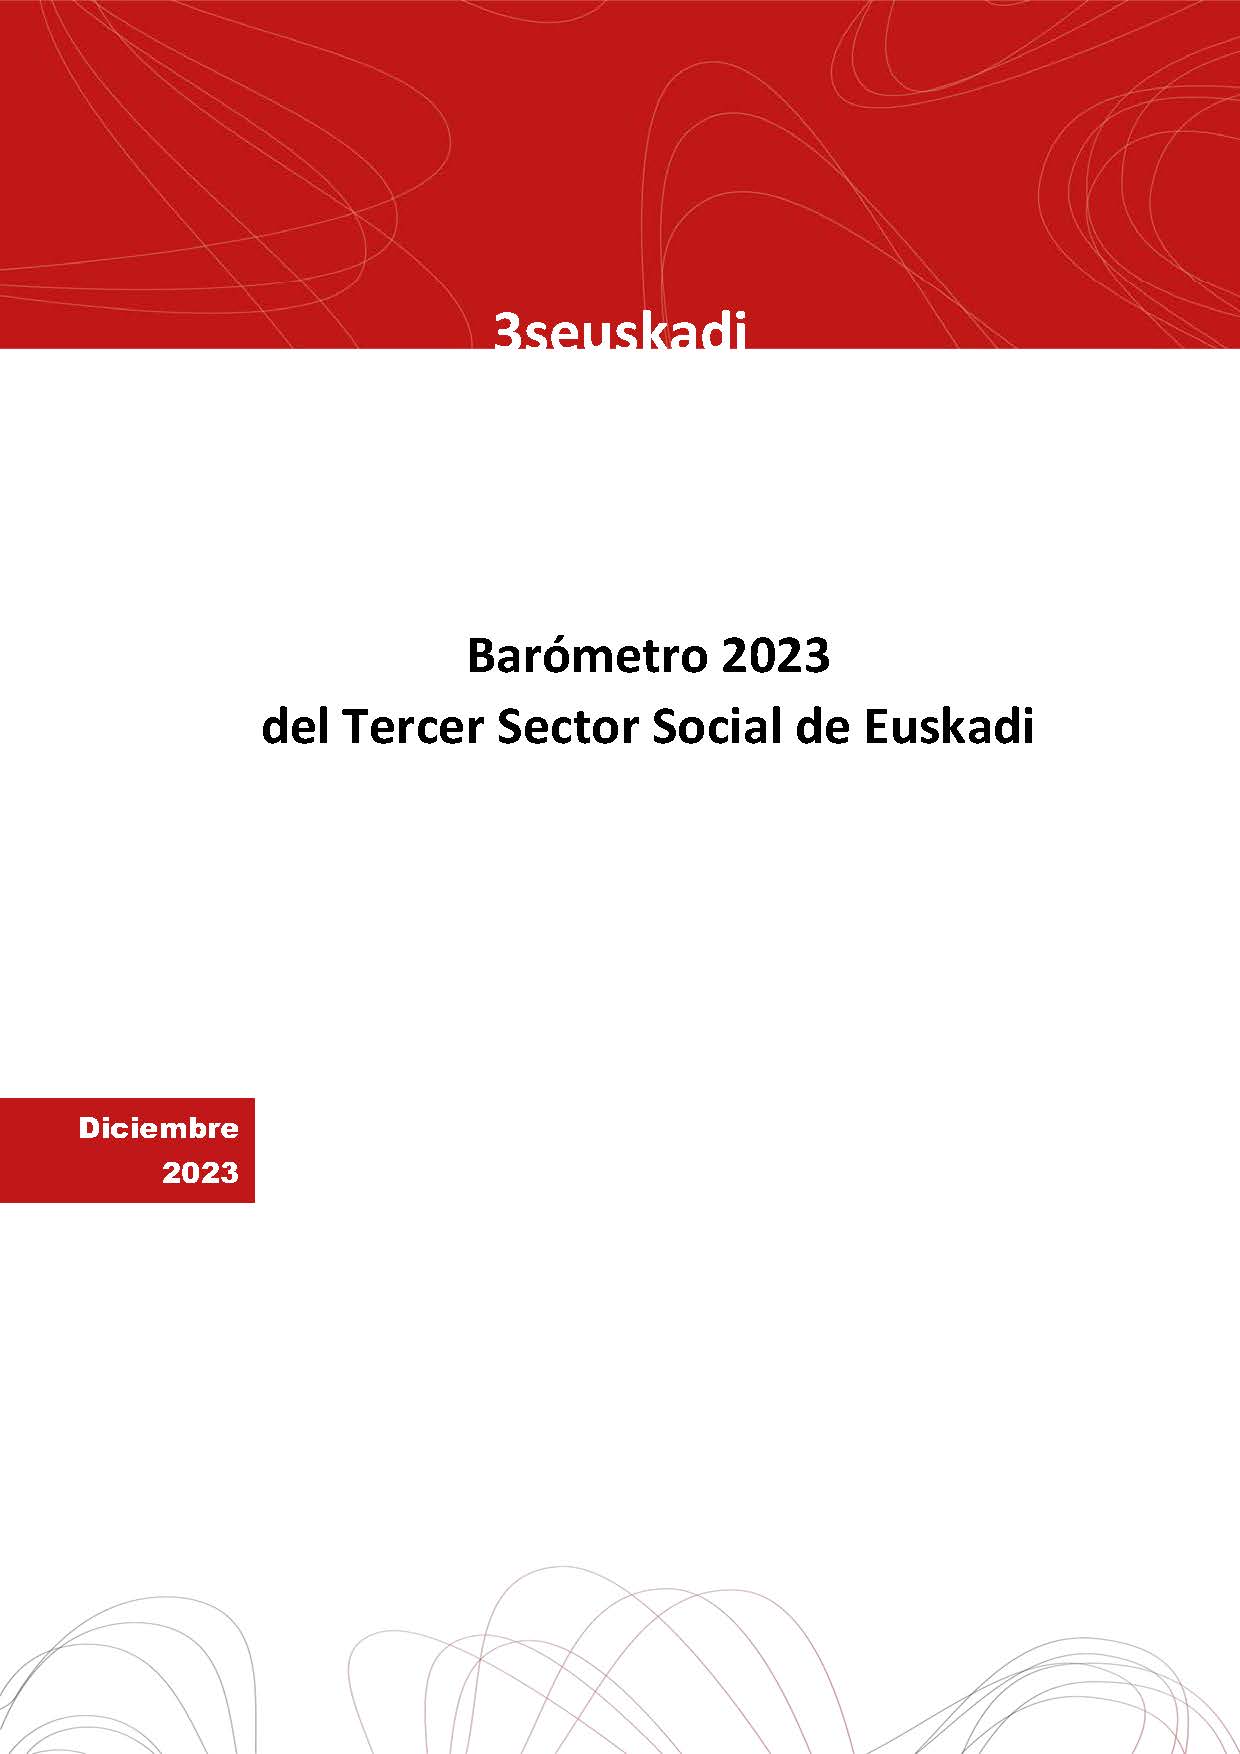 Barómetro Tercer Sector Social de Euskadi 2023